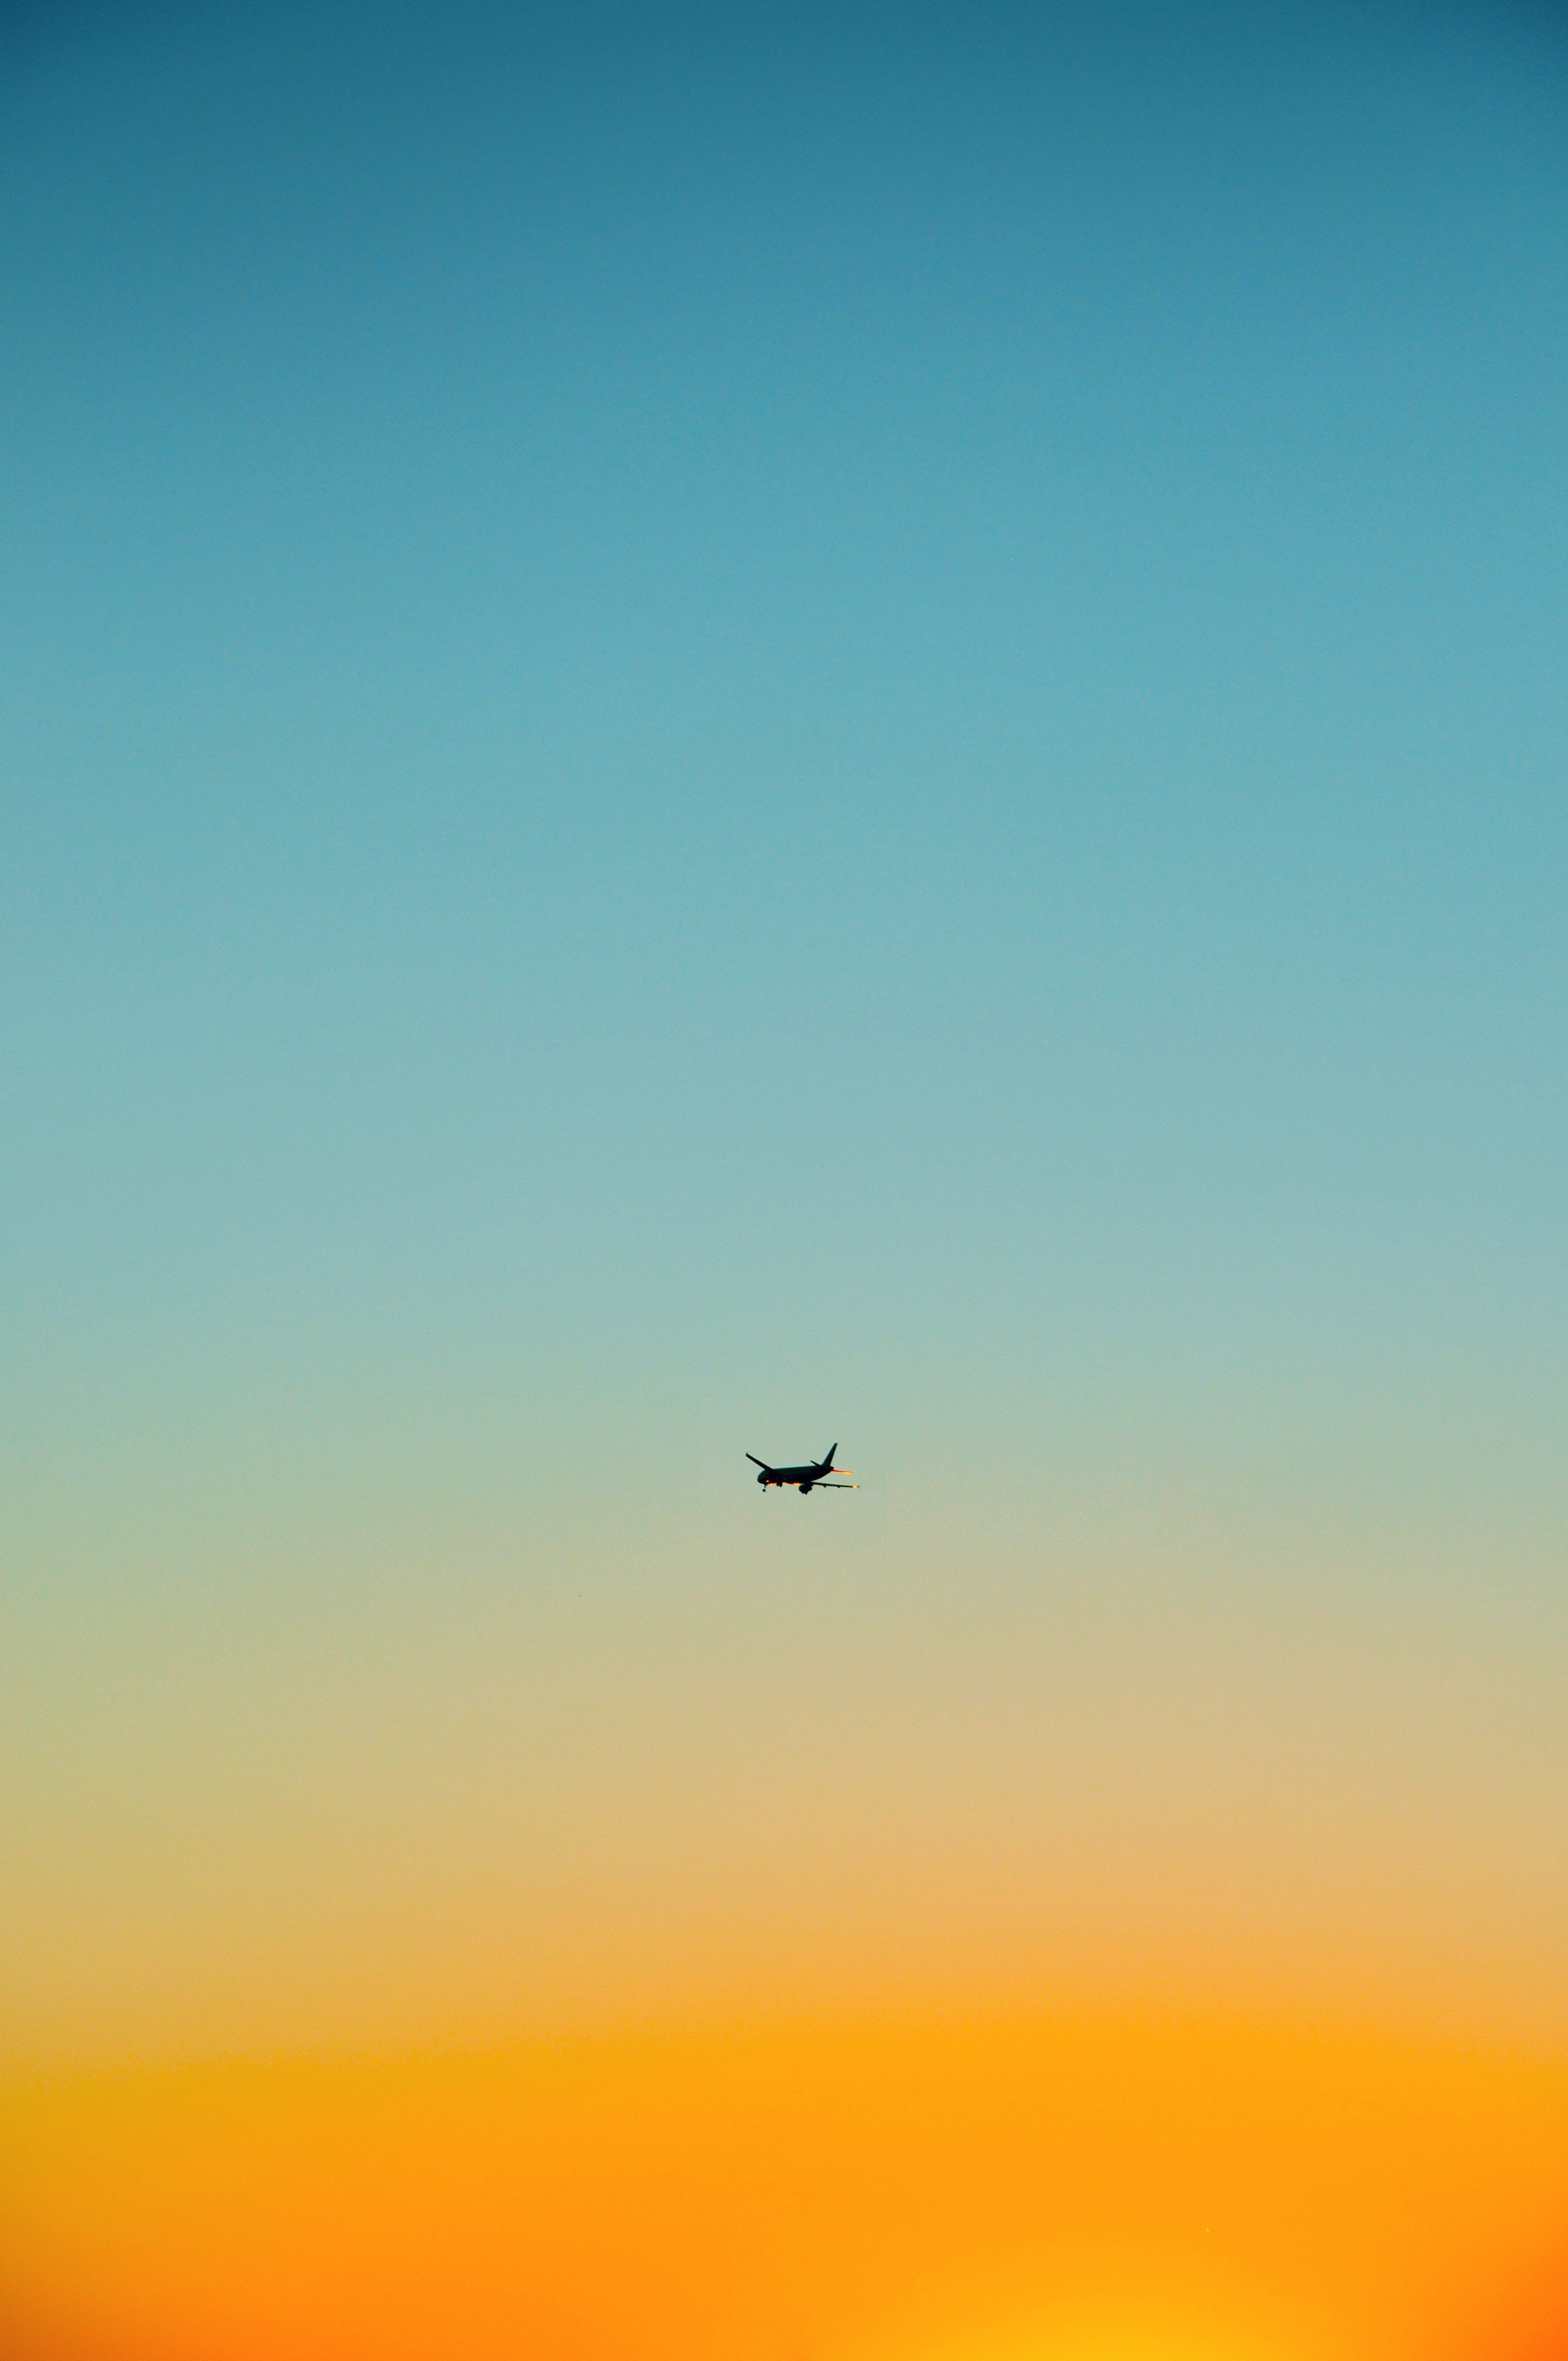 Скачать обои бесплатно Полет, Самолет, Небо, Минимализм картинка на рабочий стол ПК